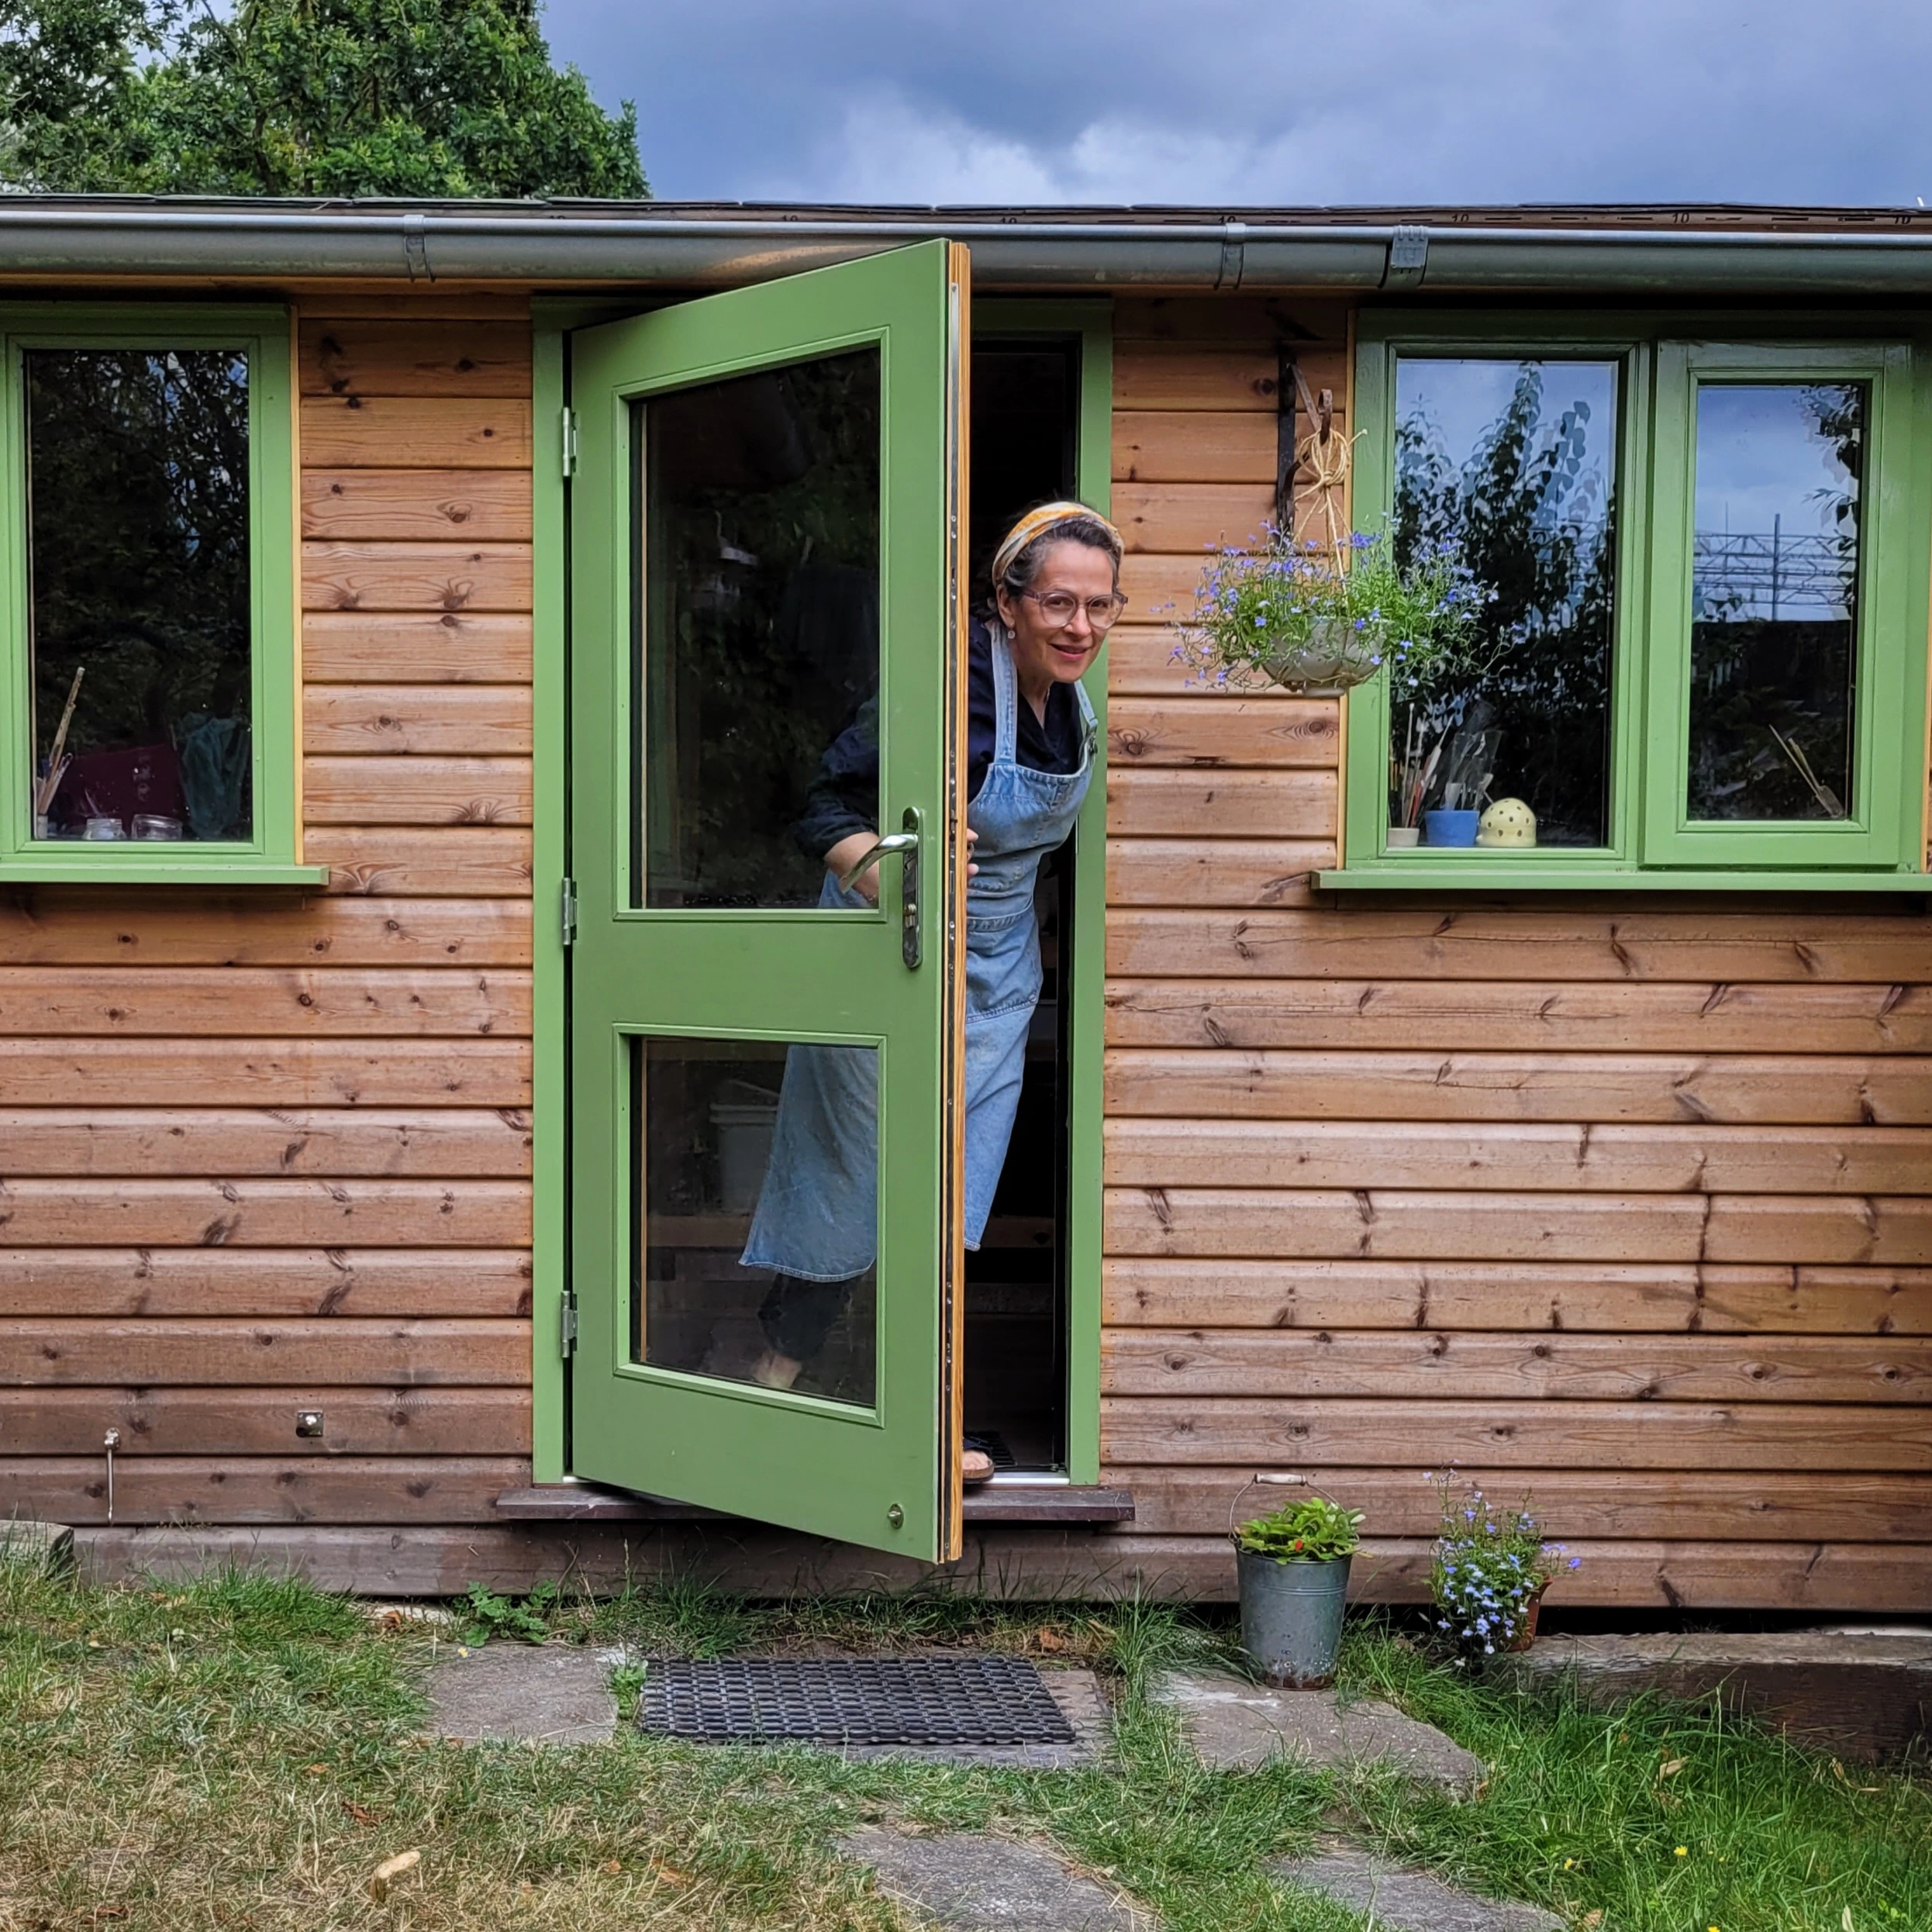 lucyandjaneceramics Lucy is standing in the doorway entrance to her garden pottery studio a wooden cabin with green windows and door 